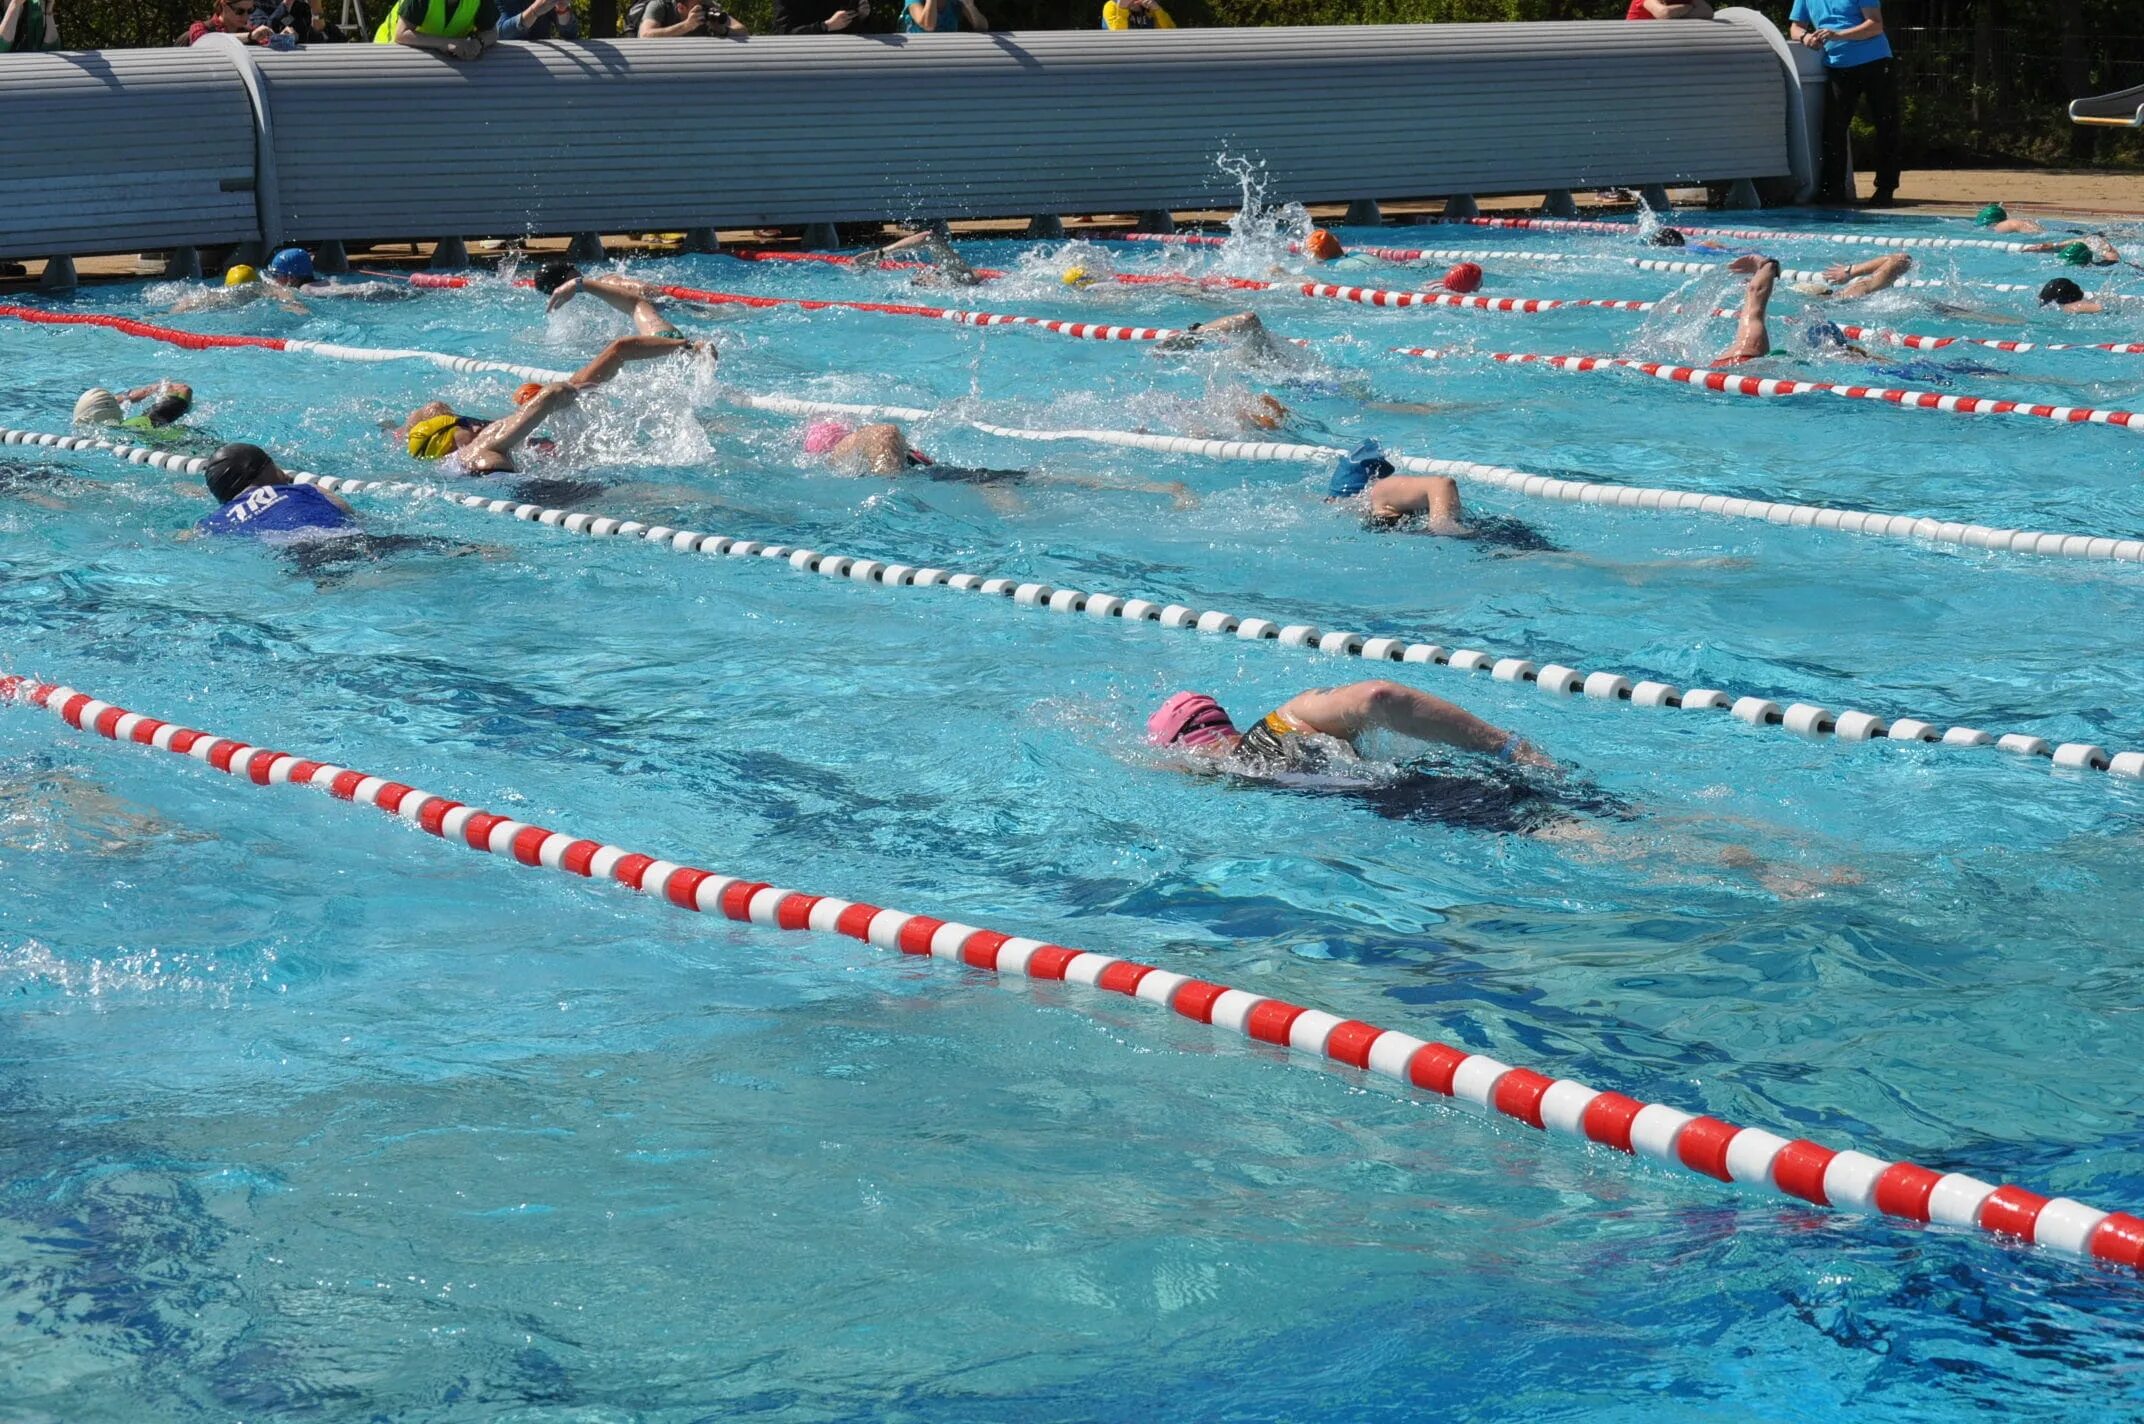 Плавание спортивные группы. Бассейн Кроль. Пловец в бассейне. Водный спорт в бассейне. Плавание соревнования.